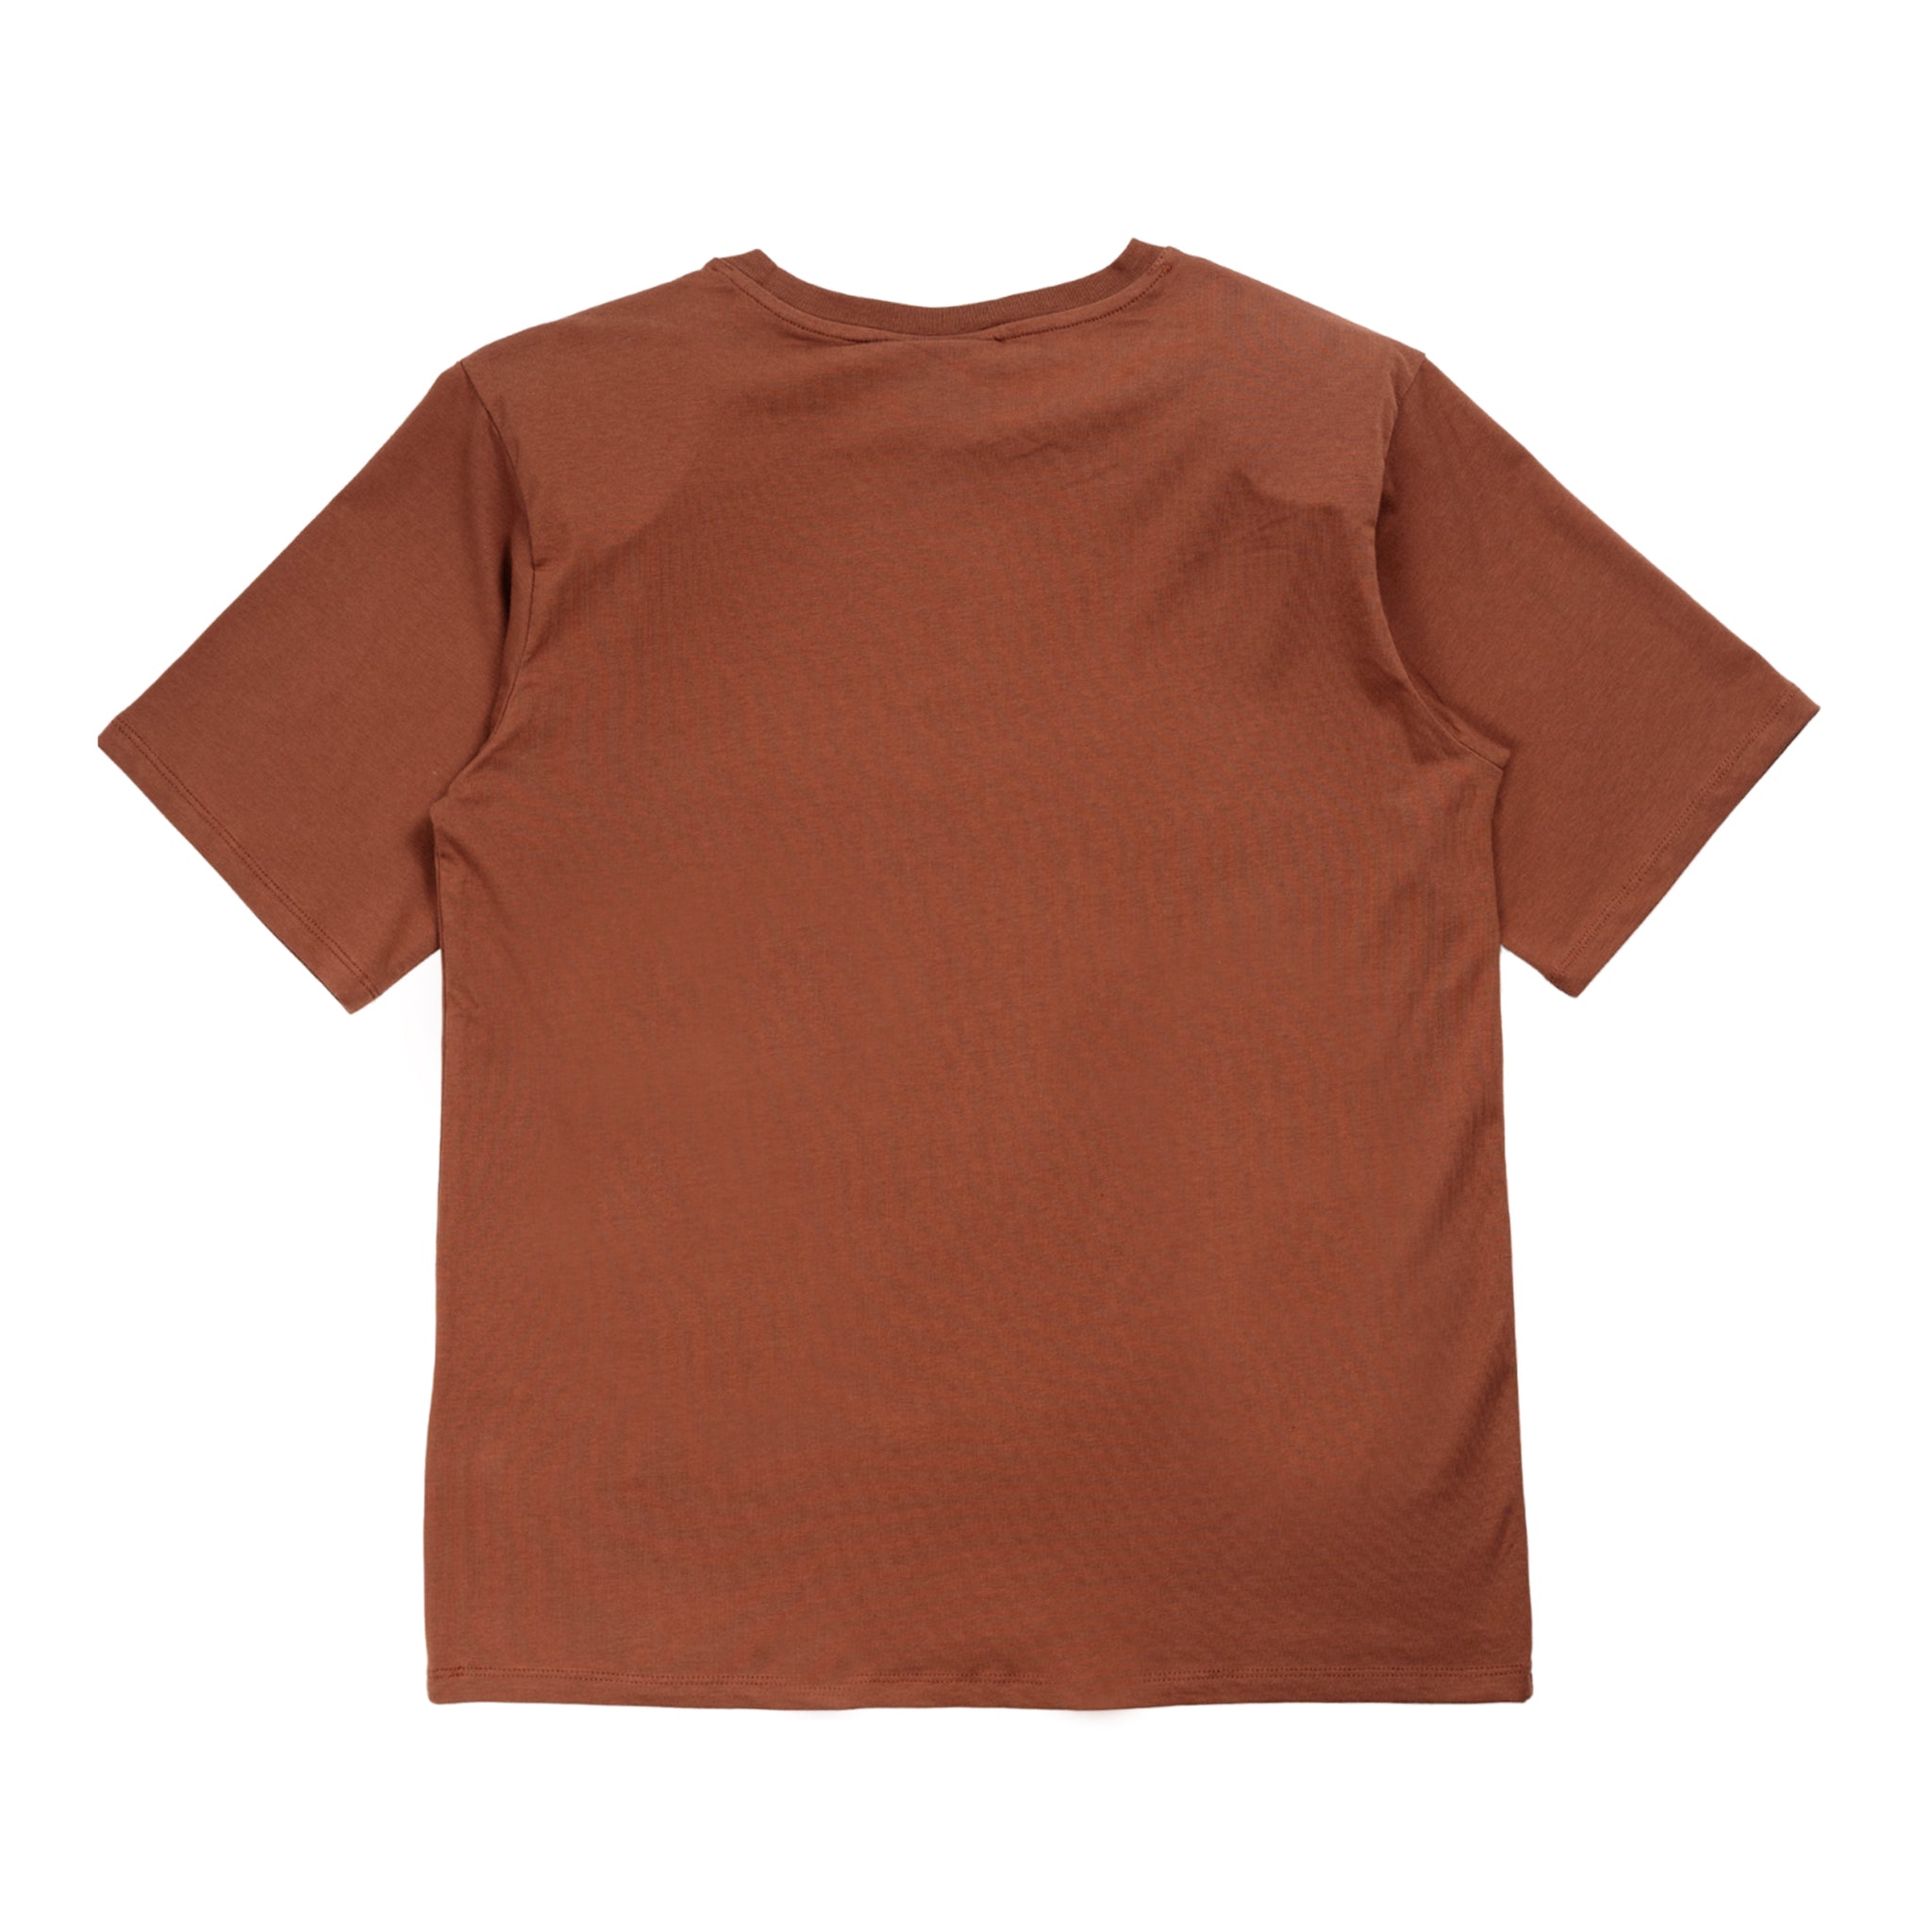 Samurillygz maglietta in marrone